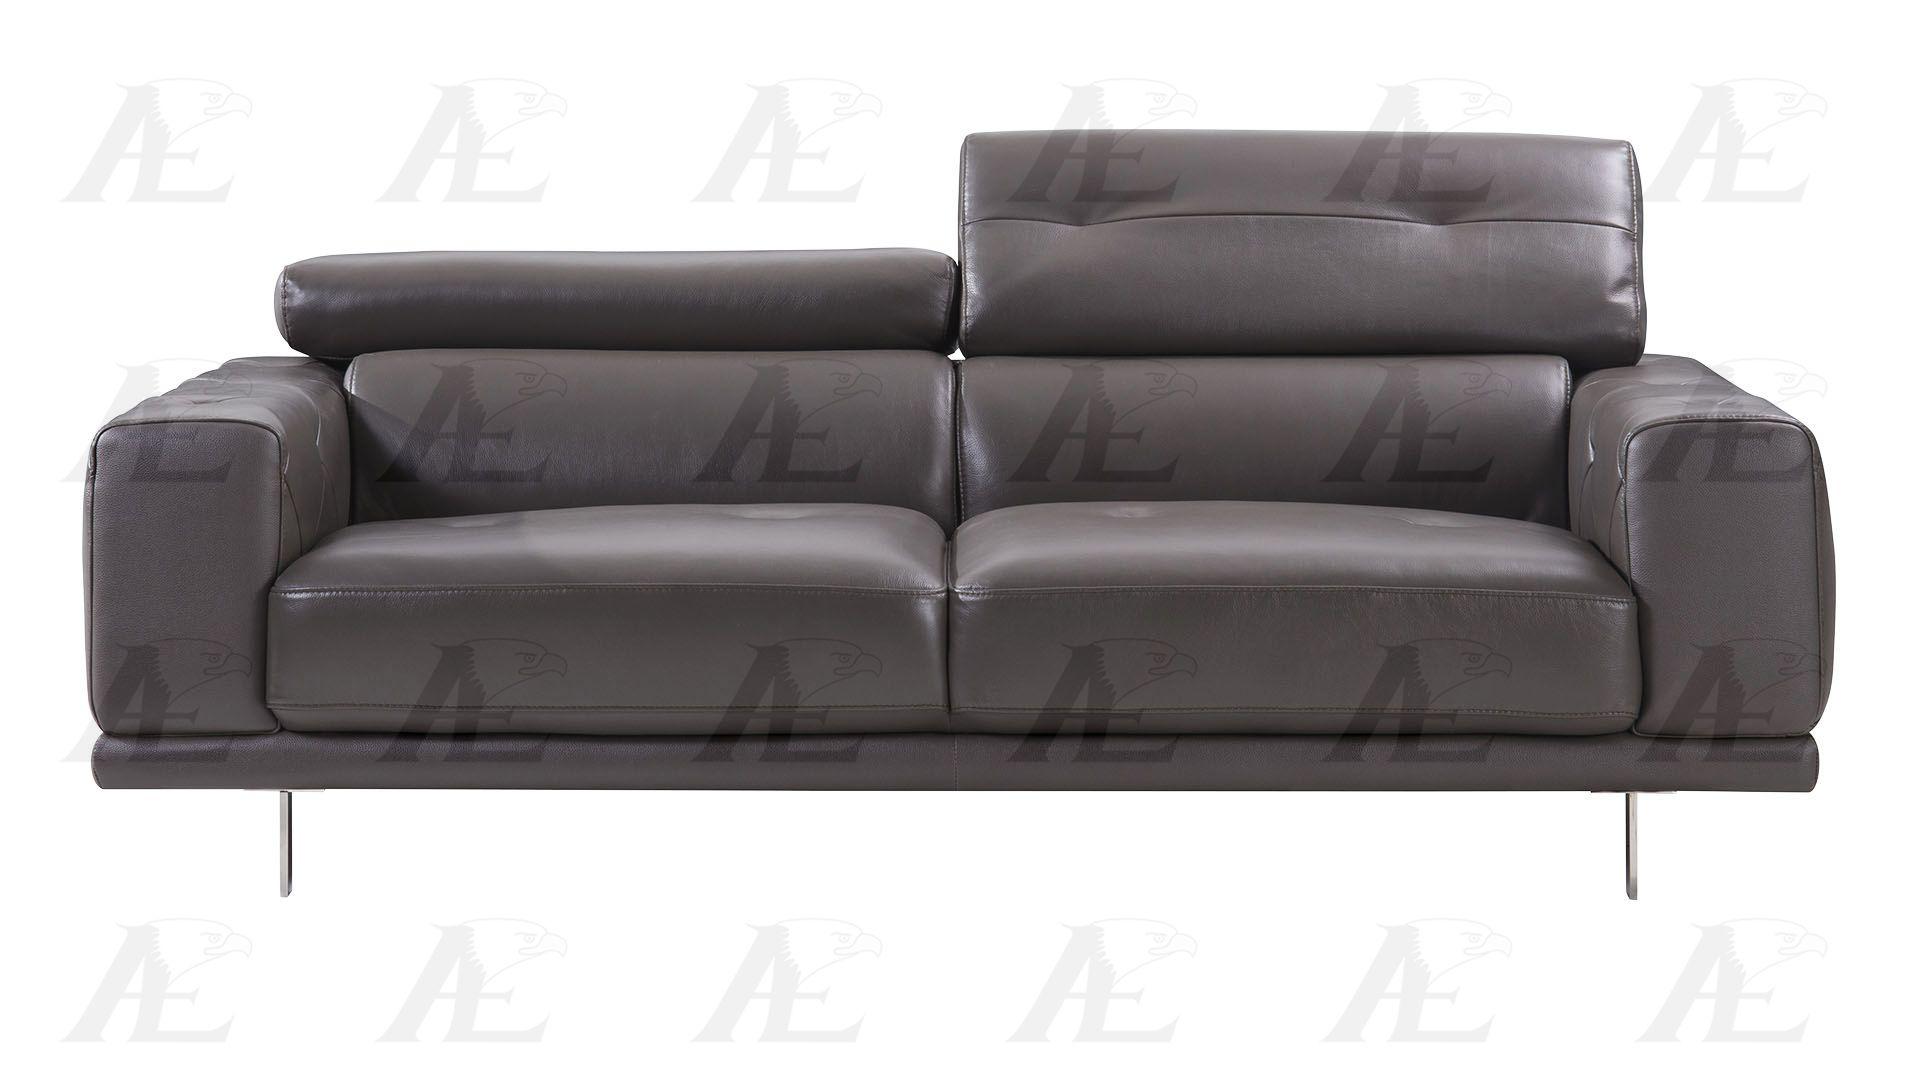 

                    
American Eagle Furniture EK039-TPE Sofa and Loveseat Set Taupe Italian Leather Purchase 
